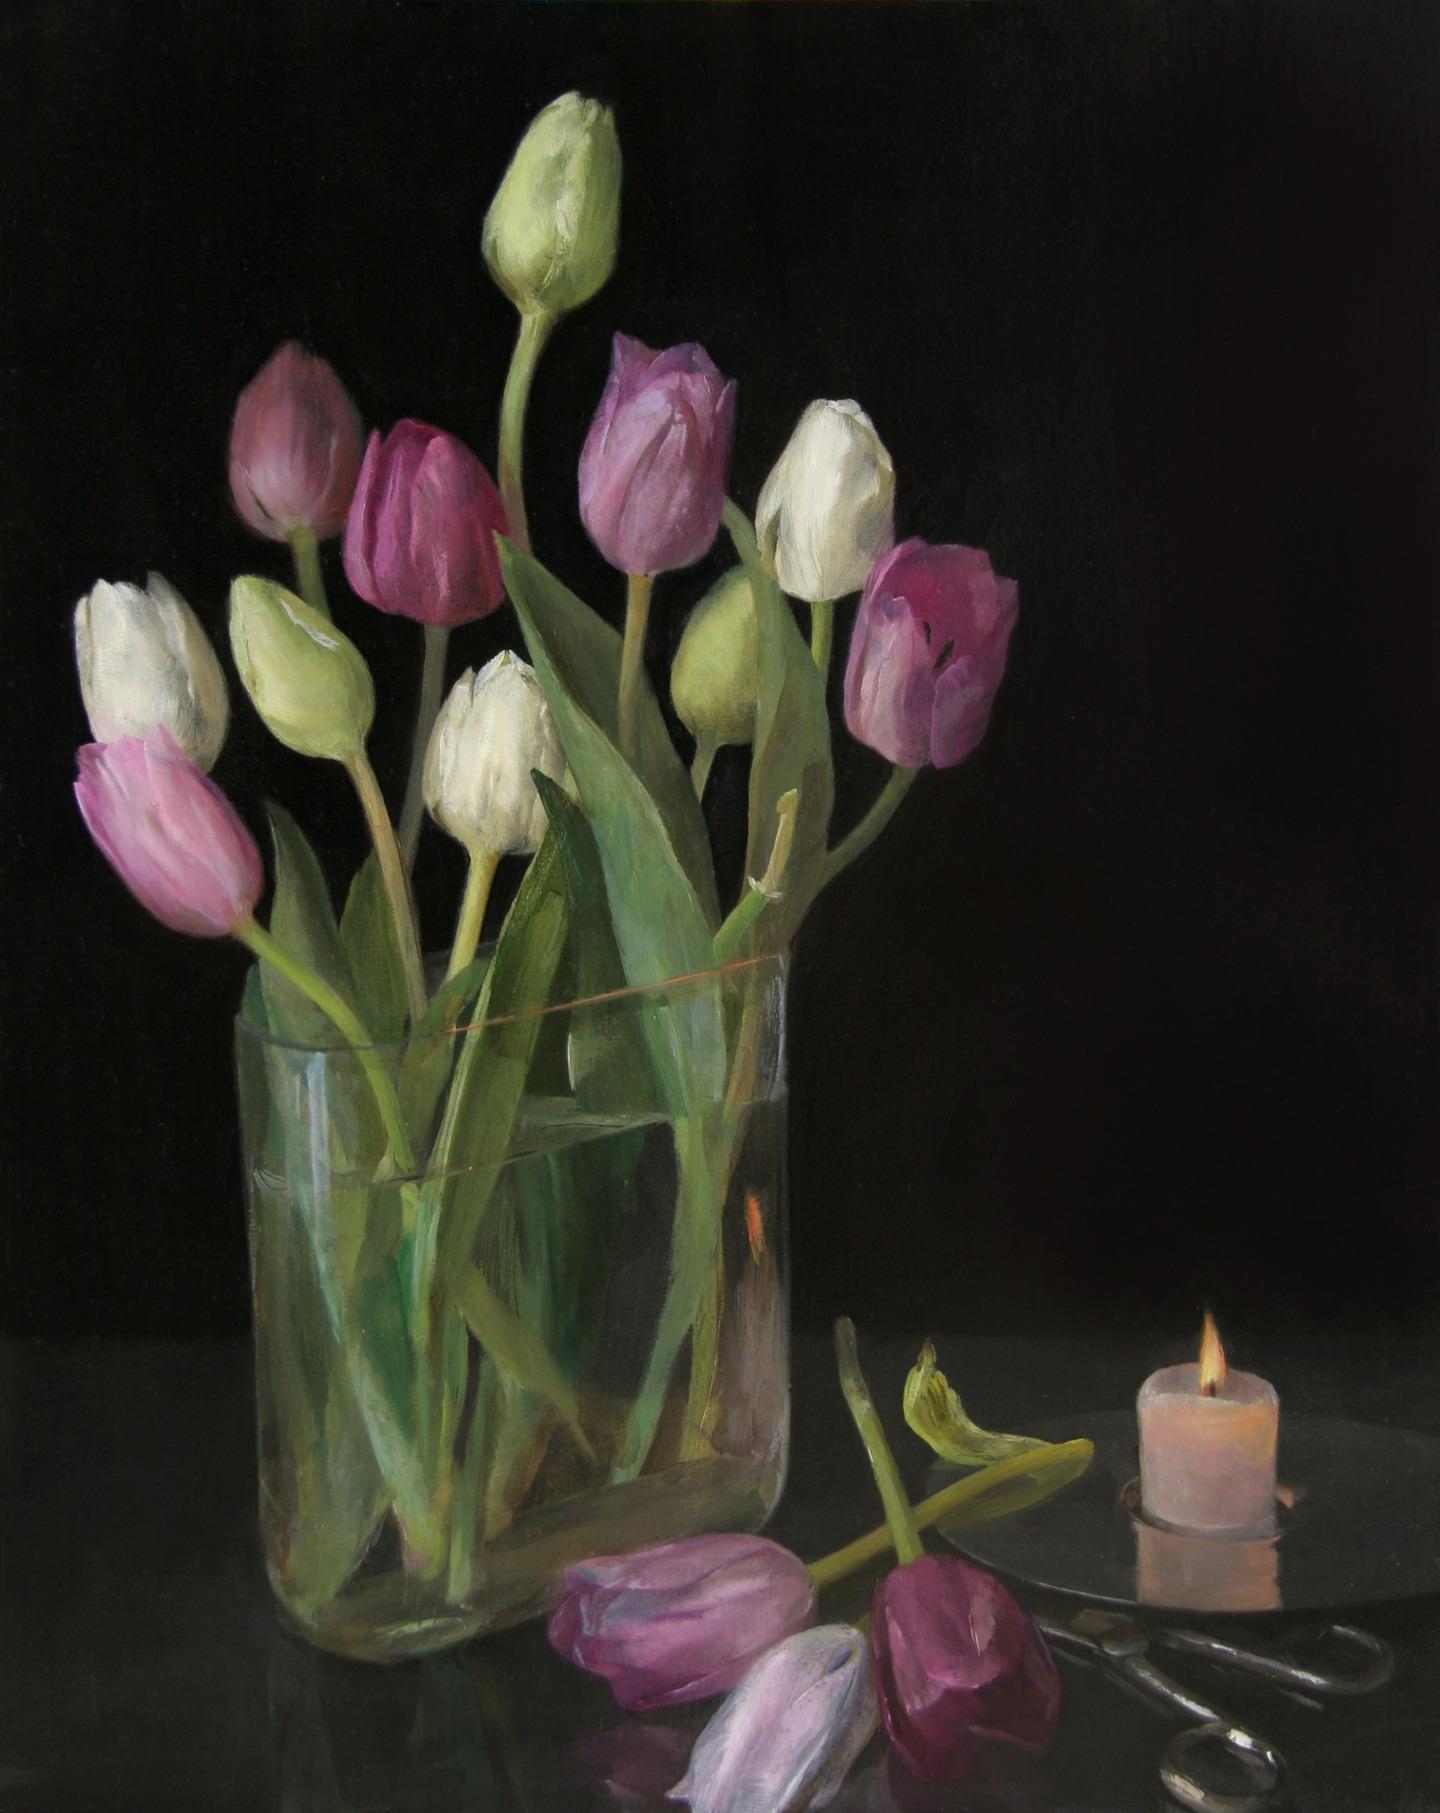 Still-Life Painting Helen Oh - Nature morte aux tulipes, vase en verre de tulipes pastel, ciseaux et bougie allumée